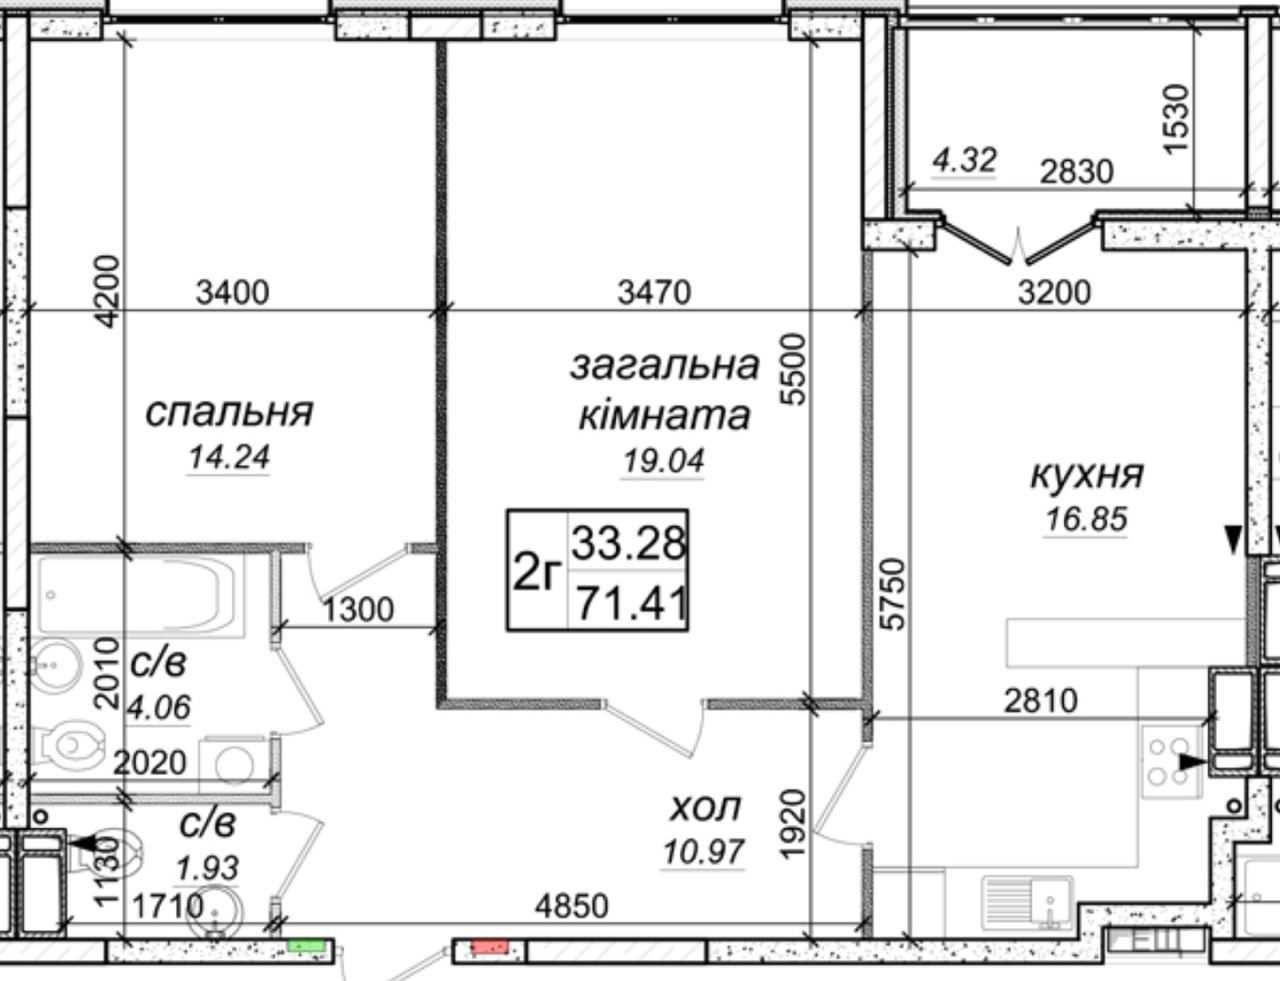 ЖК Одеський бульвар 2-х кімнатна 68000$, до метро Теремки 15/2 хв.